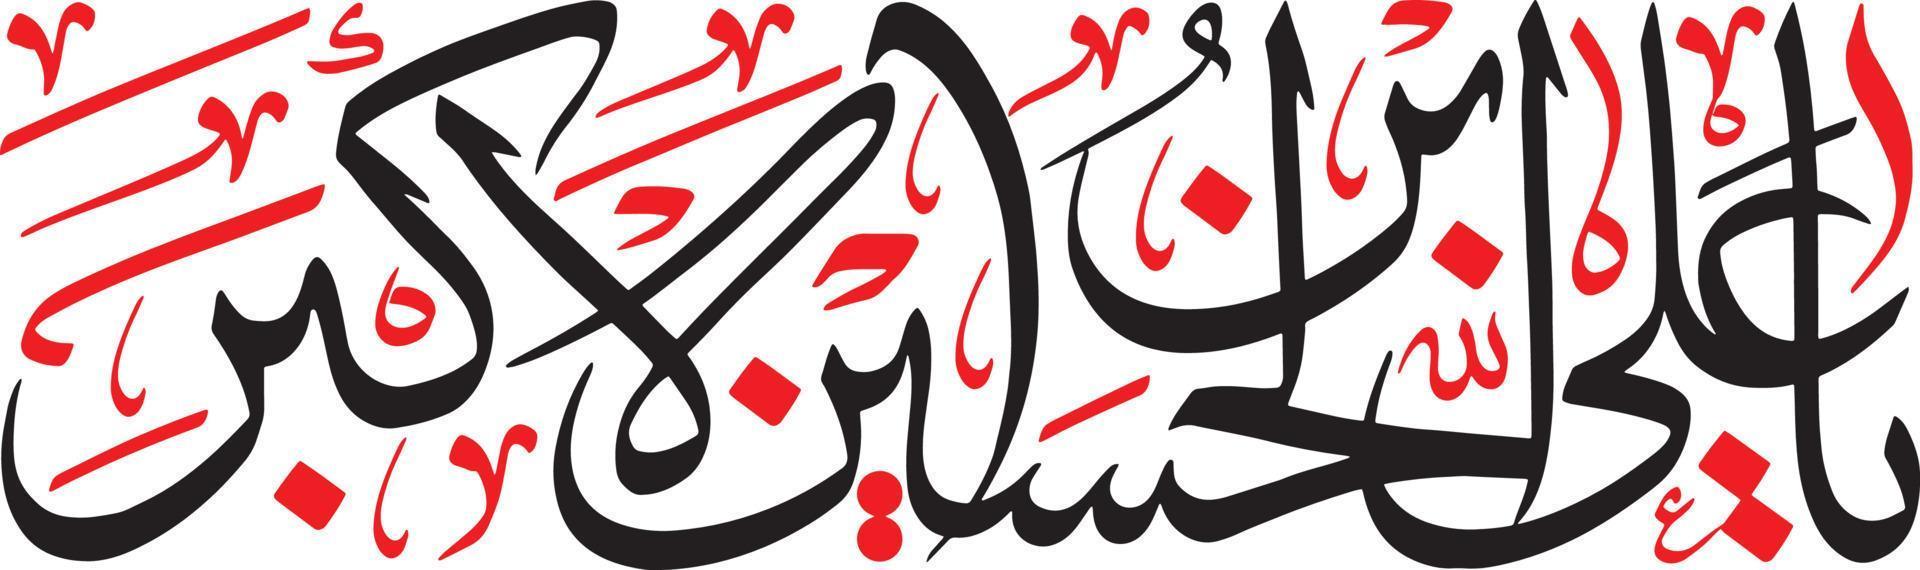 vecteur libre de calligraphie arabe islamique abi